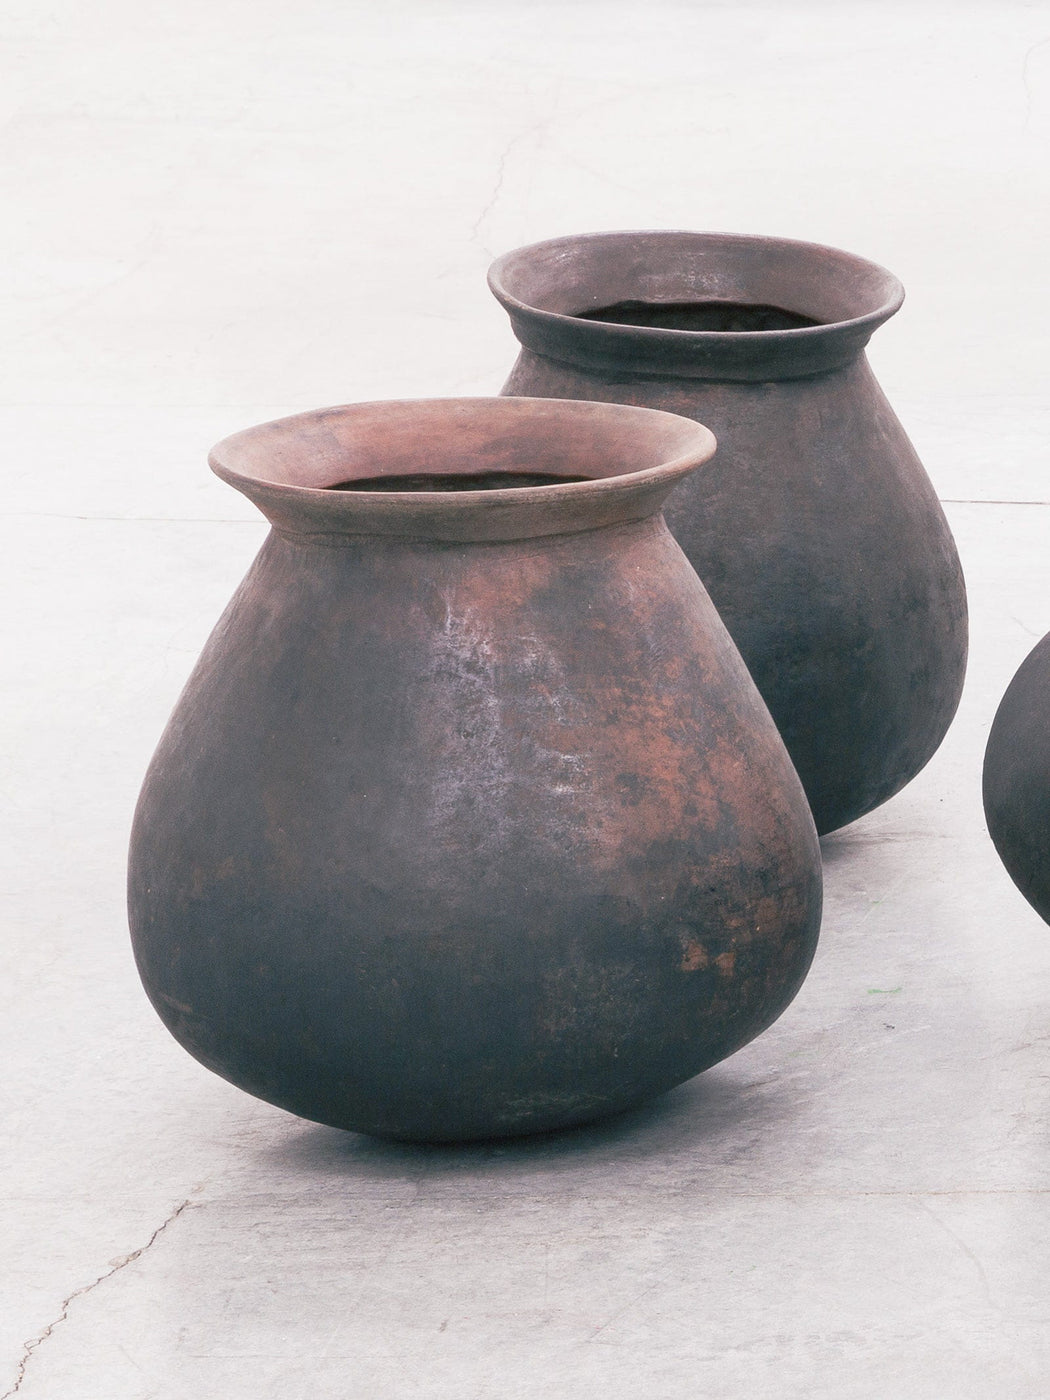 Antique decorative small pots